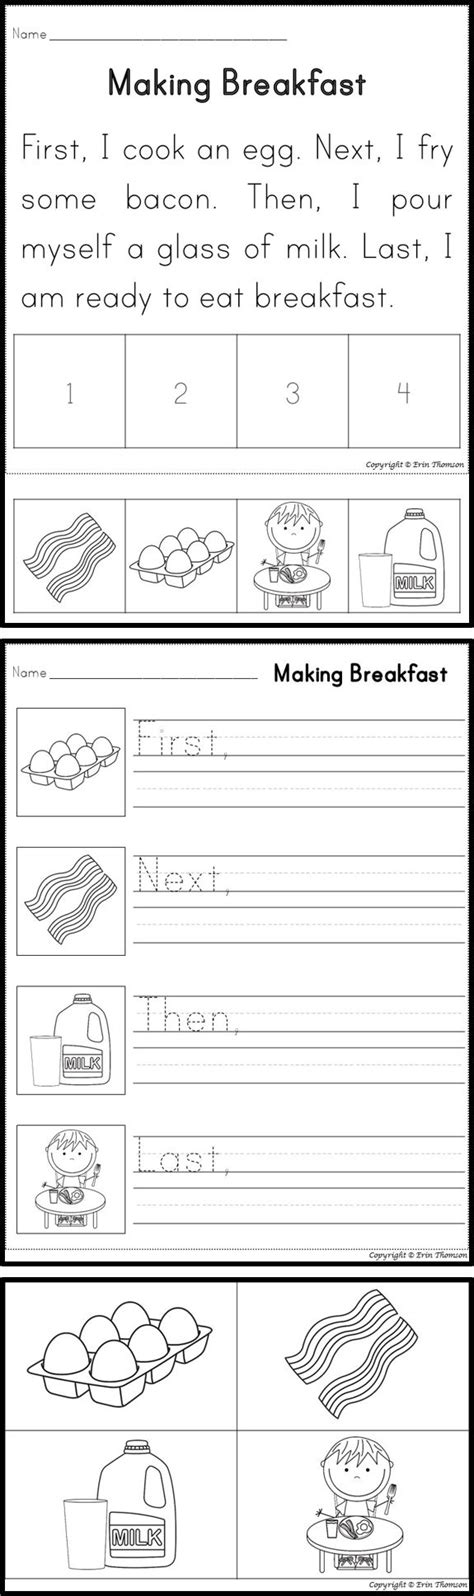 Sequence Worksheet First Grade